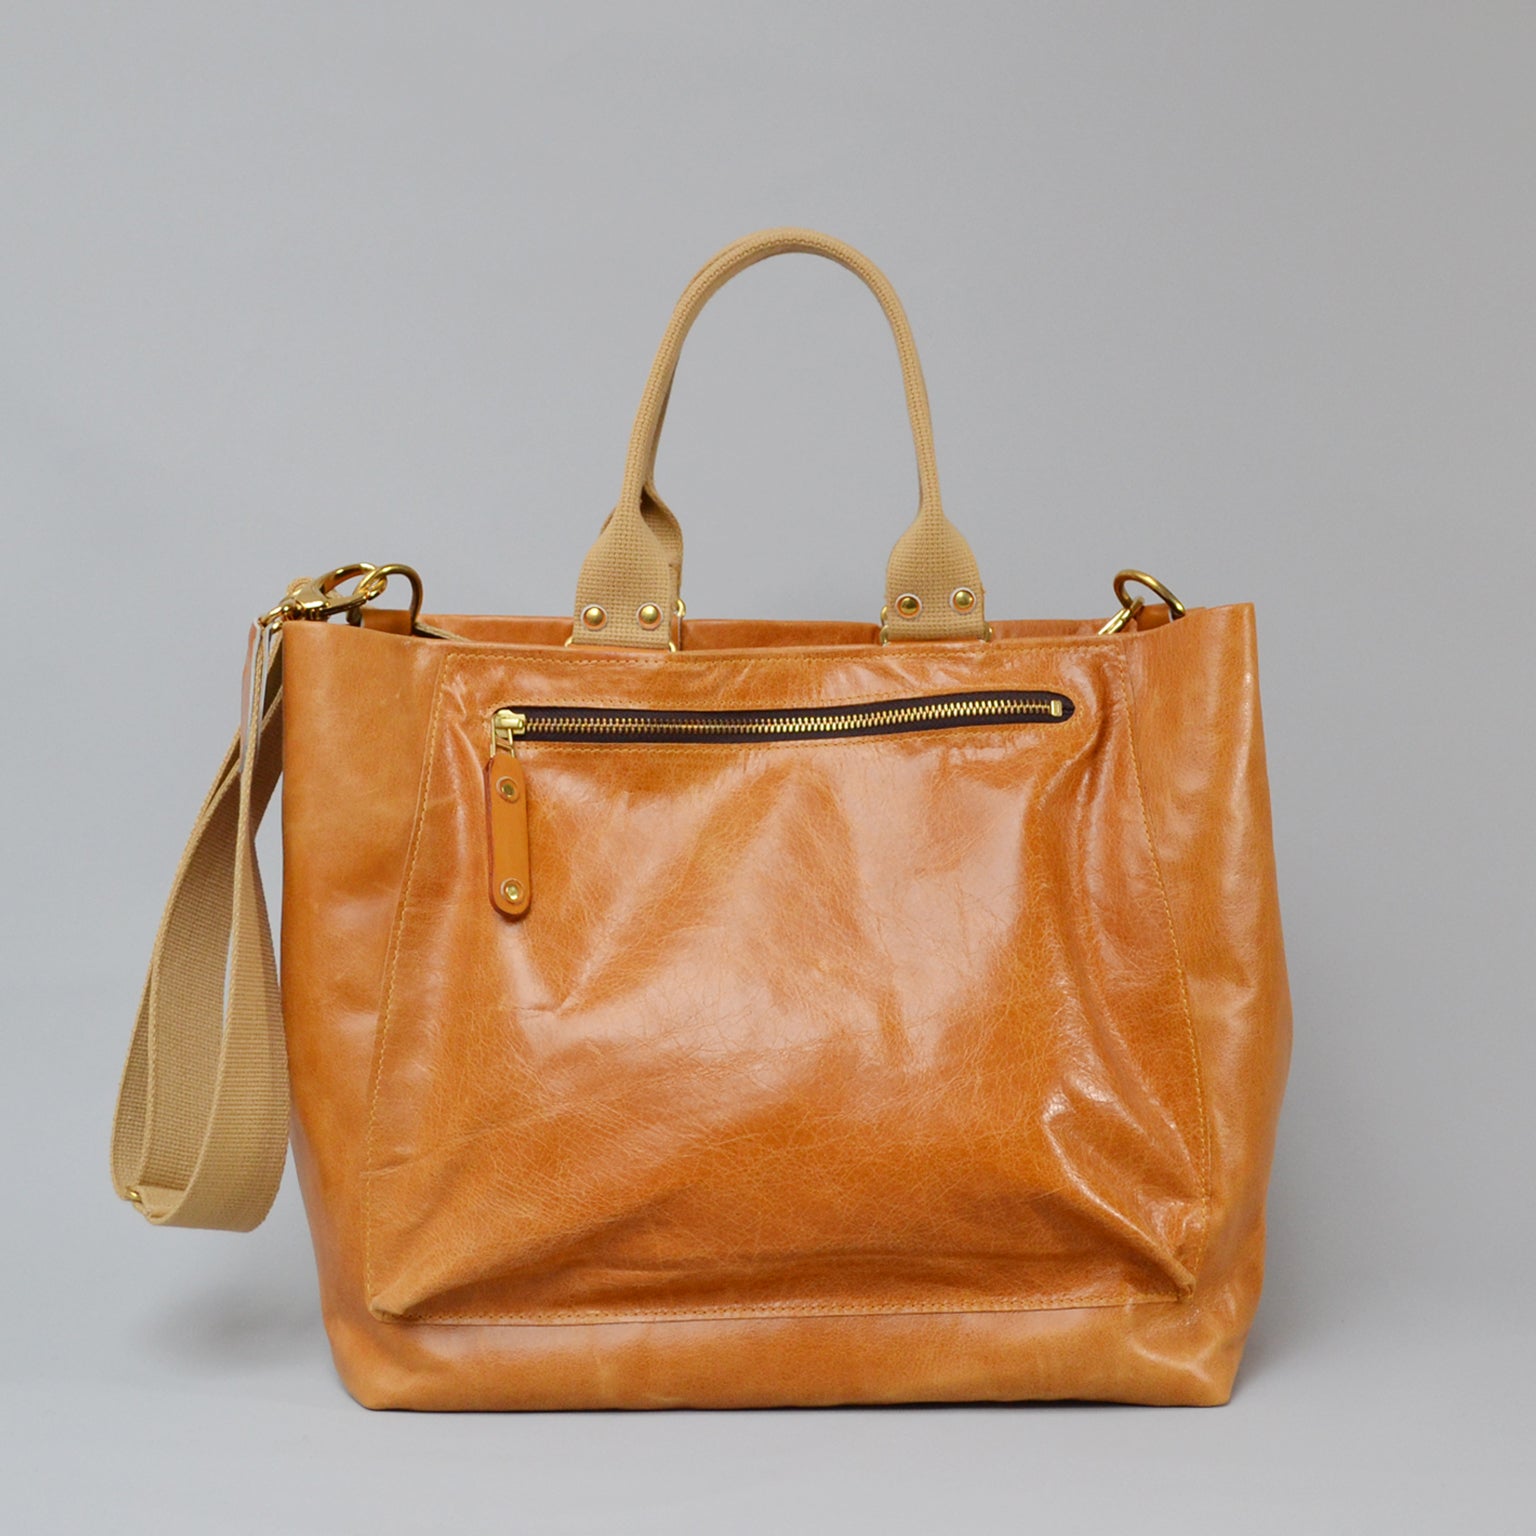 SOFIA <br/> Distressed Leather Shoulder Bag <br/> Tan